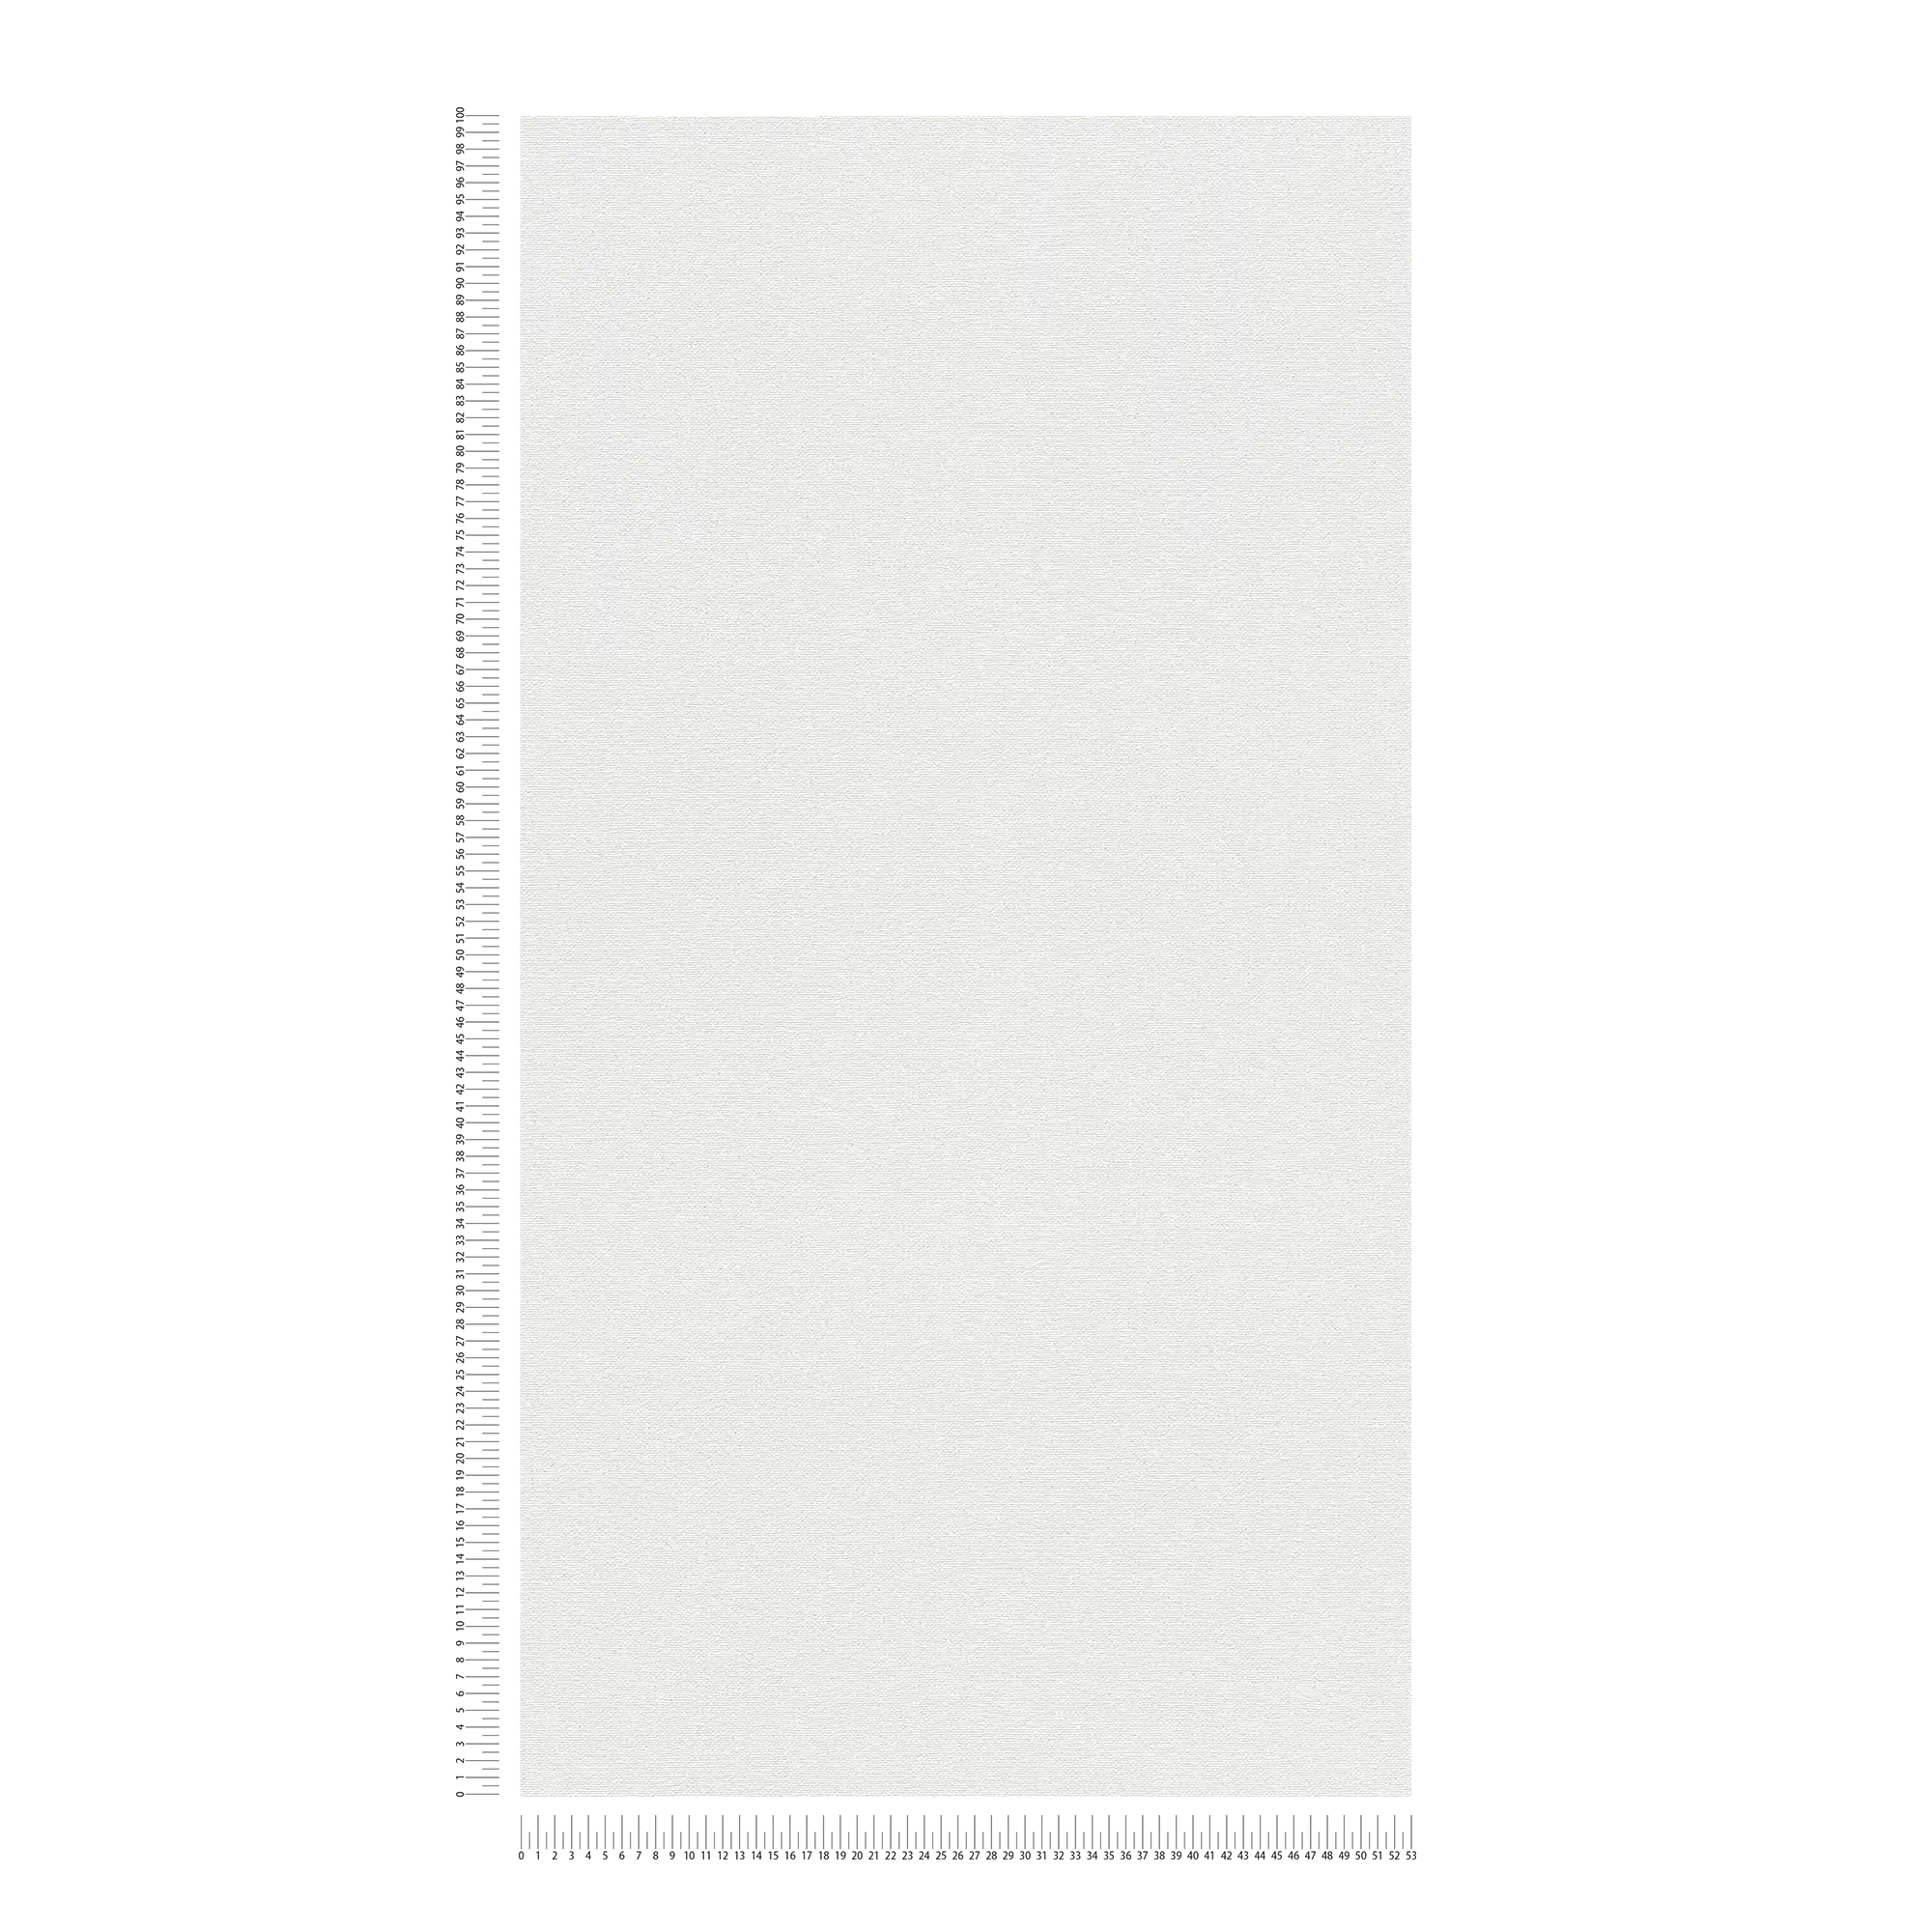             Plain linen look wallpaper with matt structure - white
        